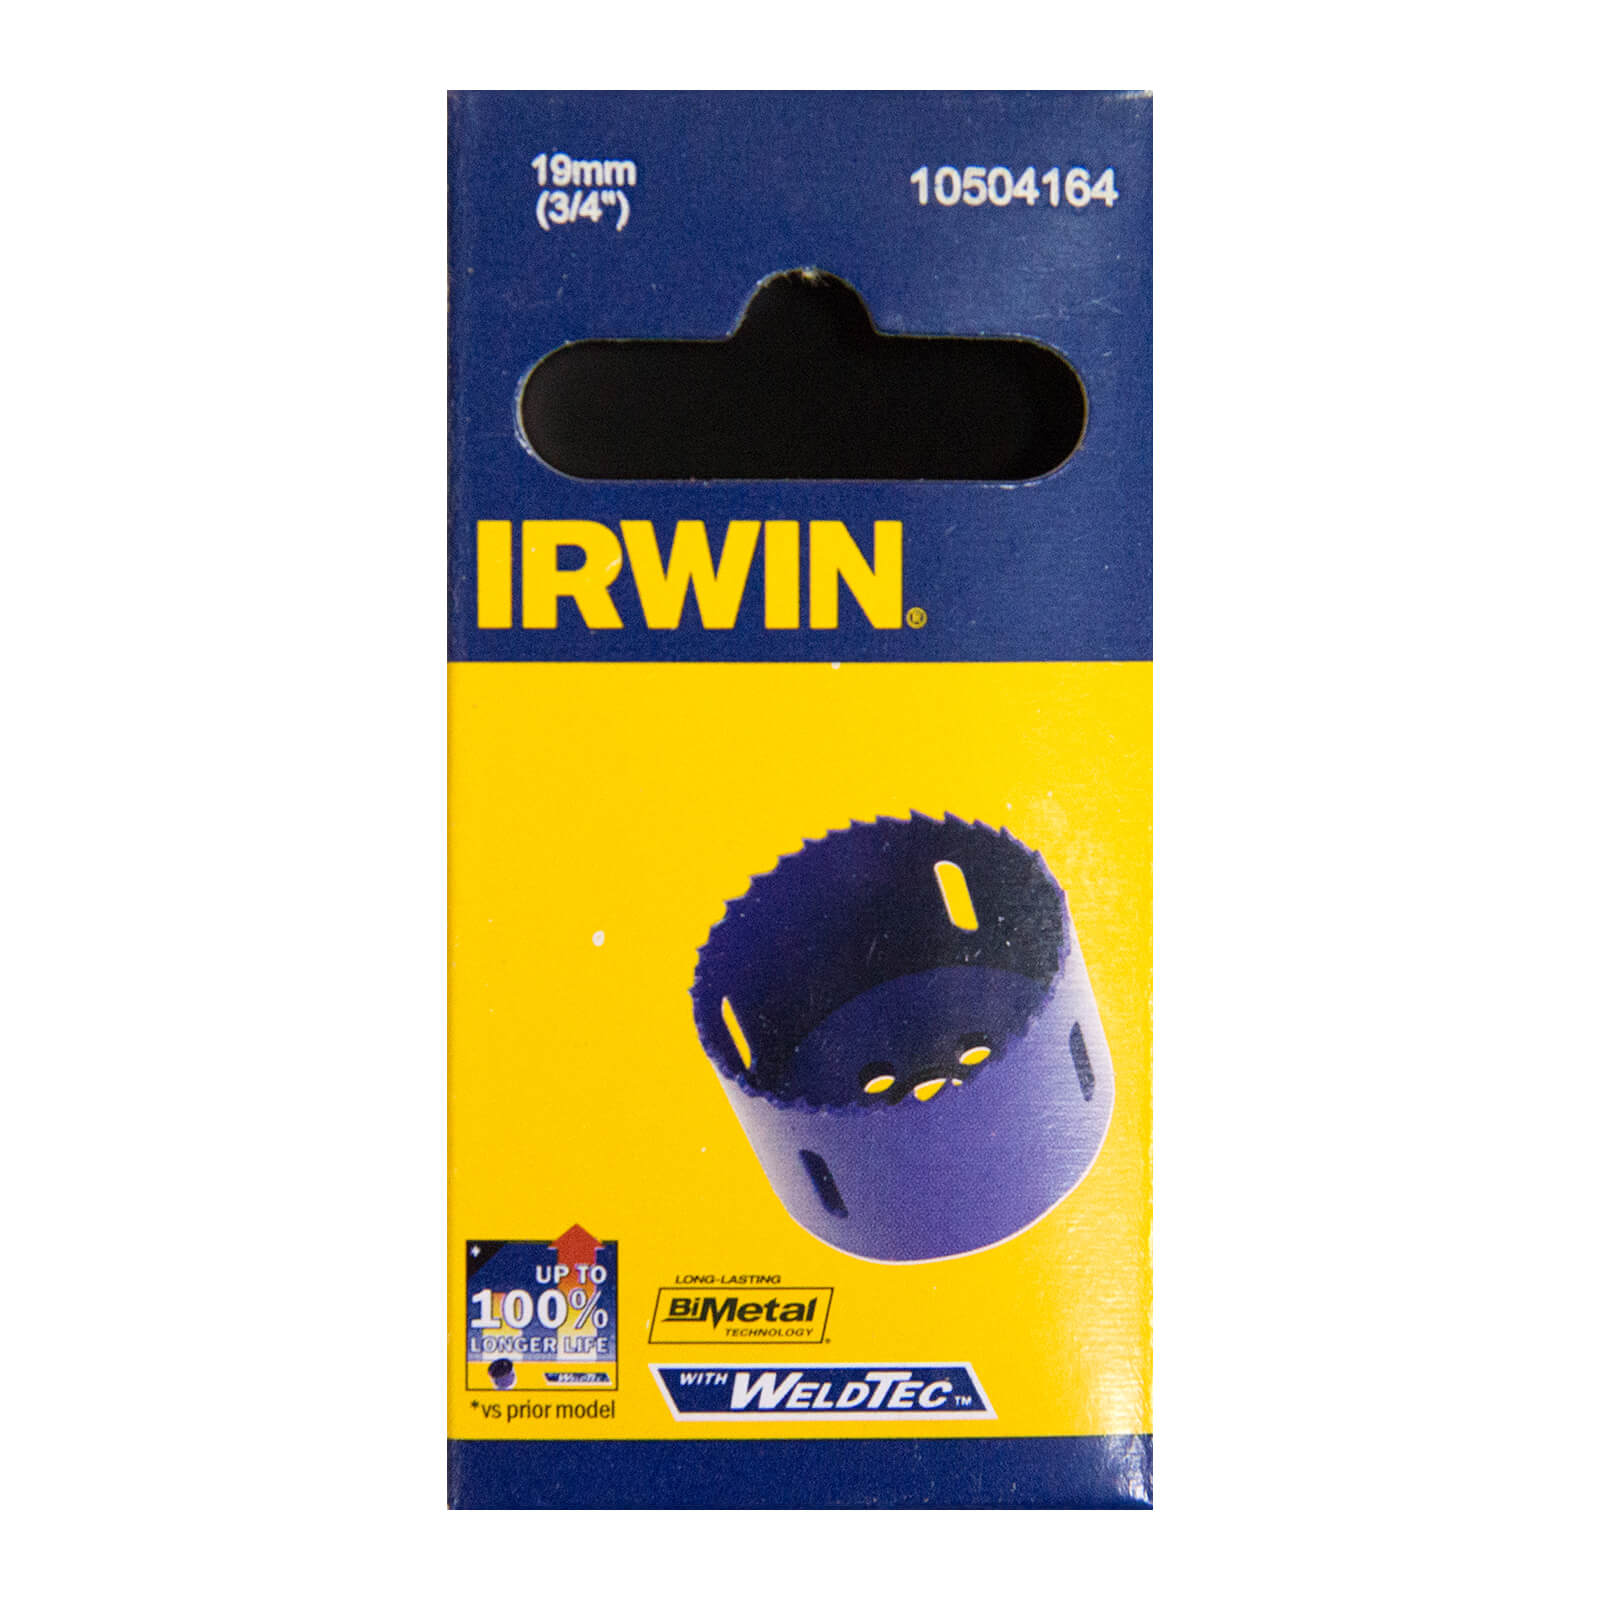 IRWIN Bi-Metal Hole Saw - 19mm